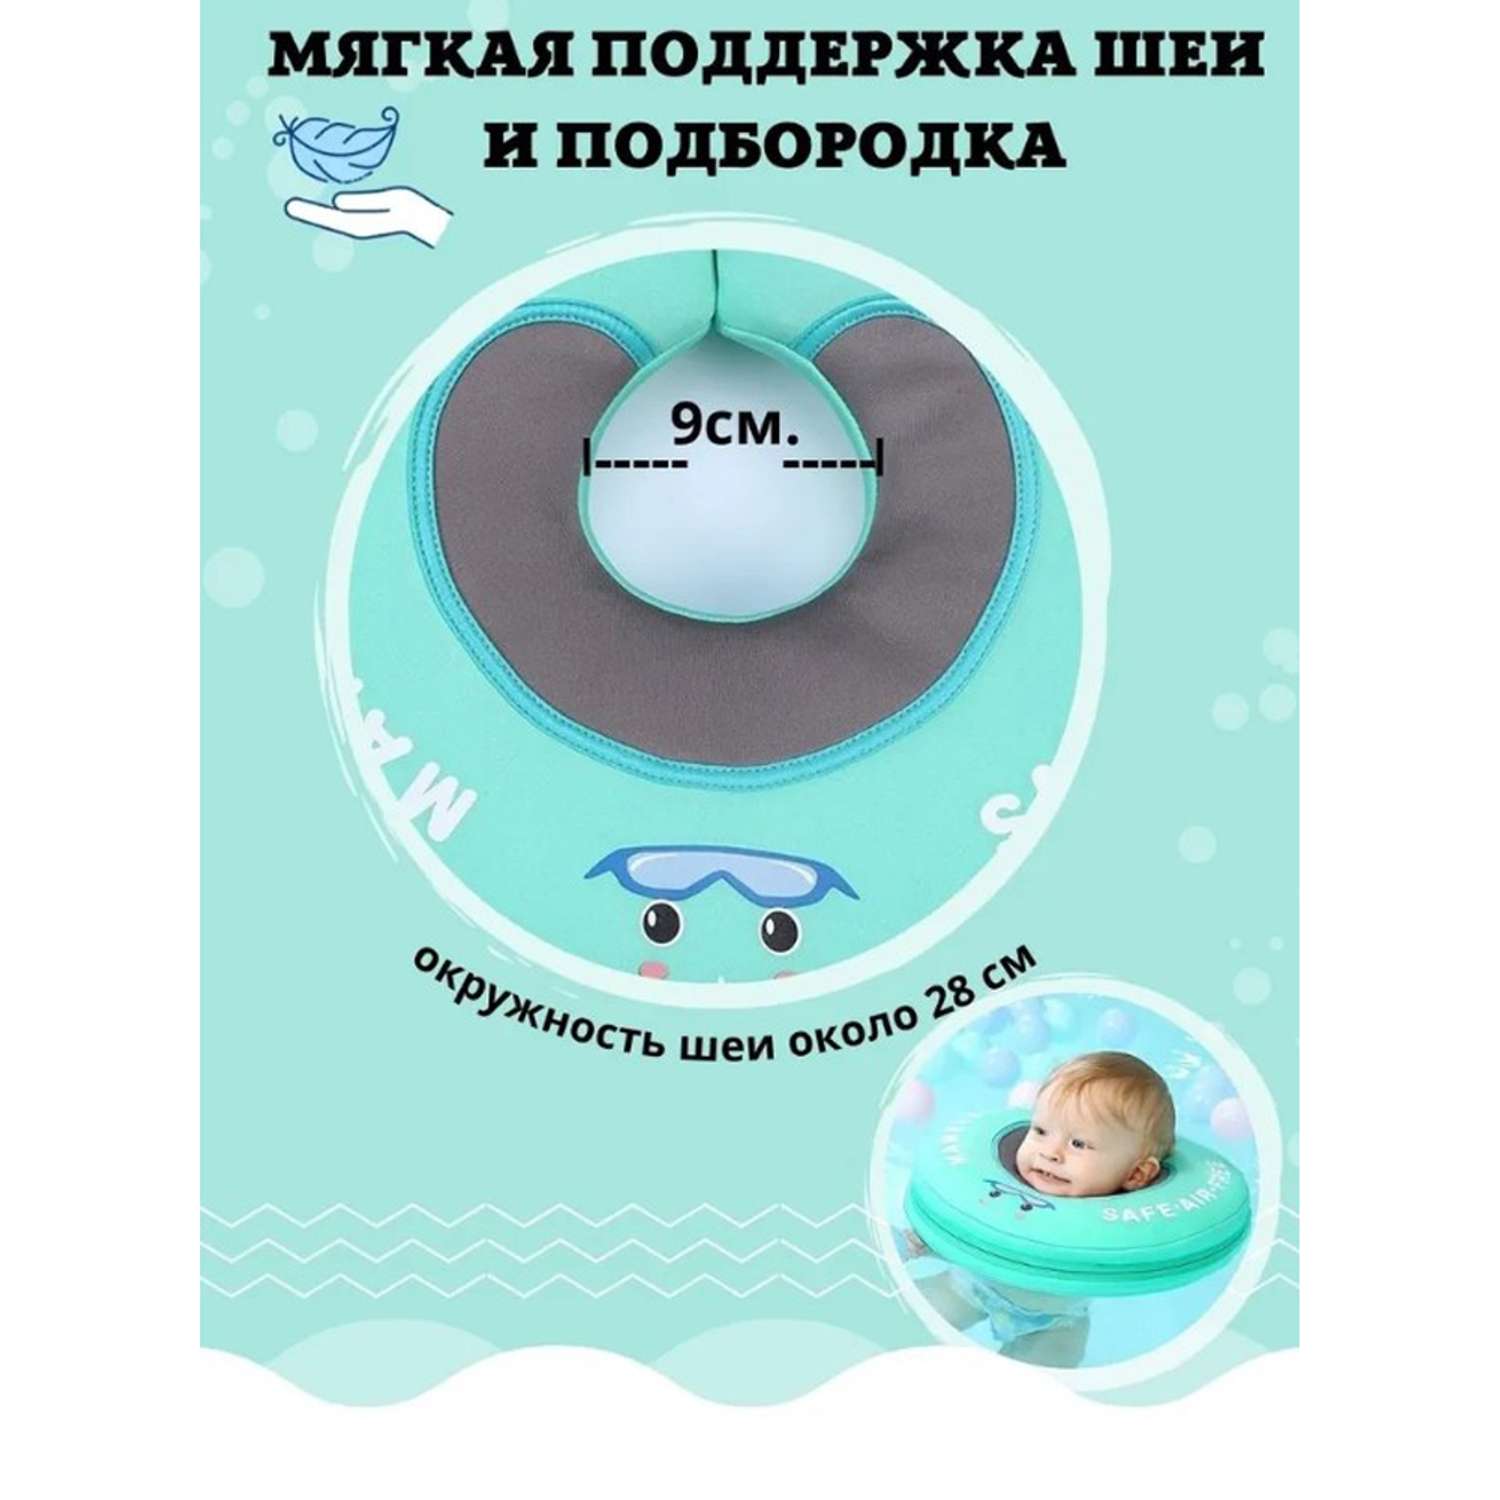 Круг на шею детский Newone для купания малышей. Размер M (0-12 месяцев) - фото 7